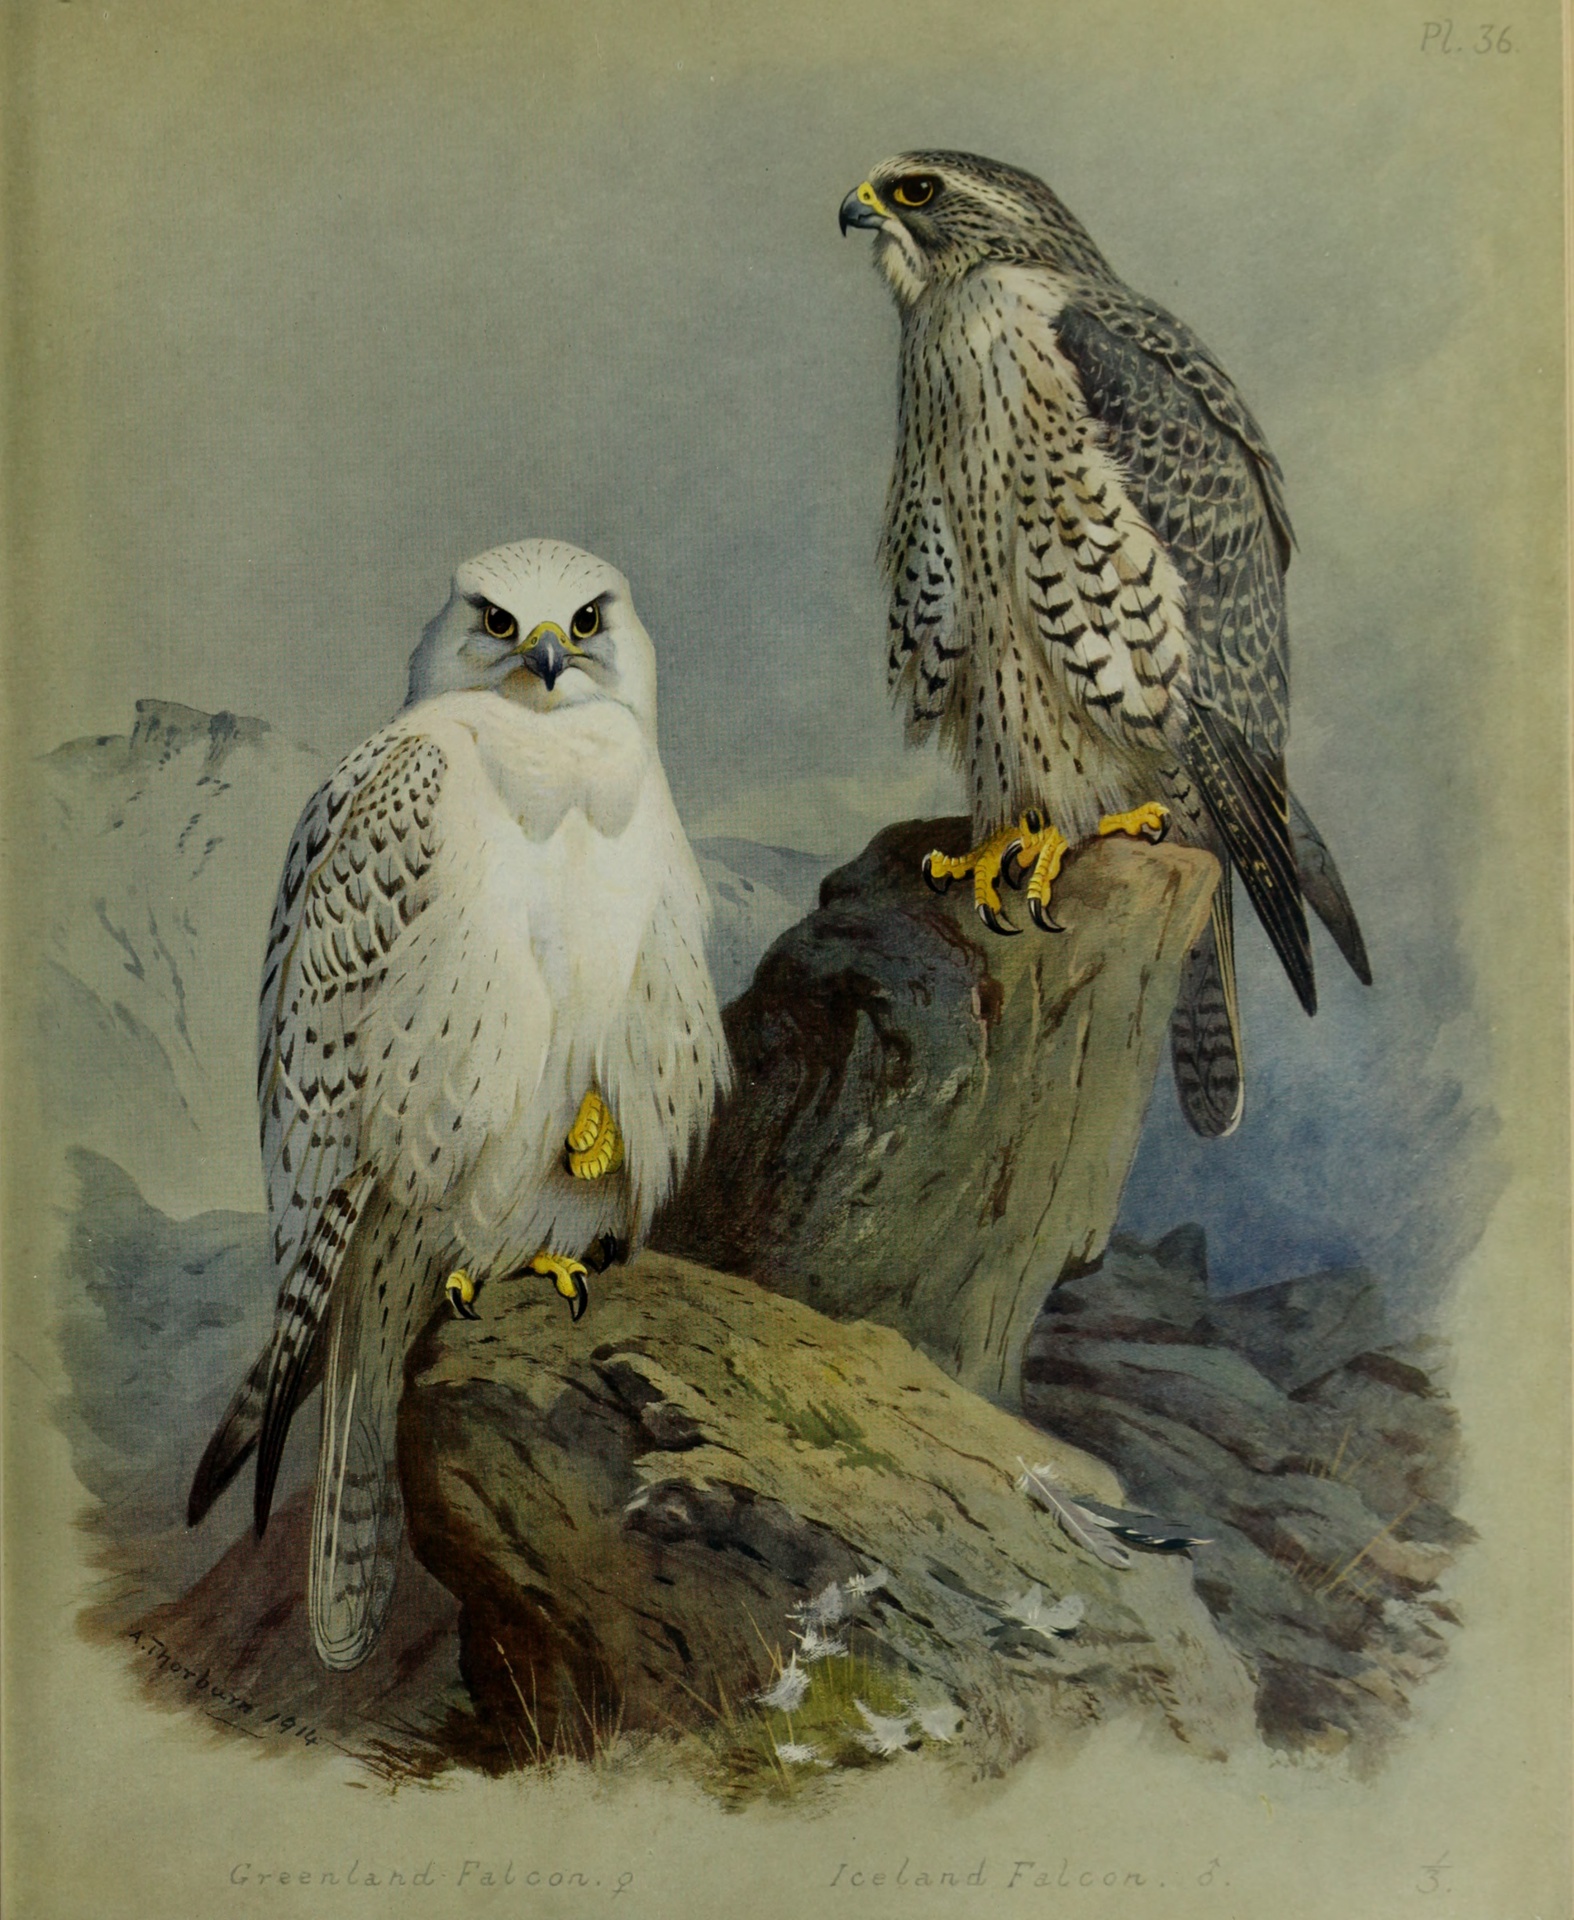 Greenland Falcon & Iceland Falcon